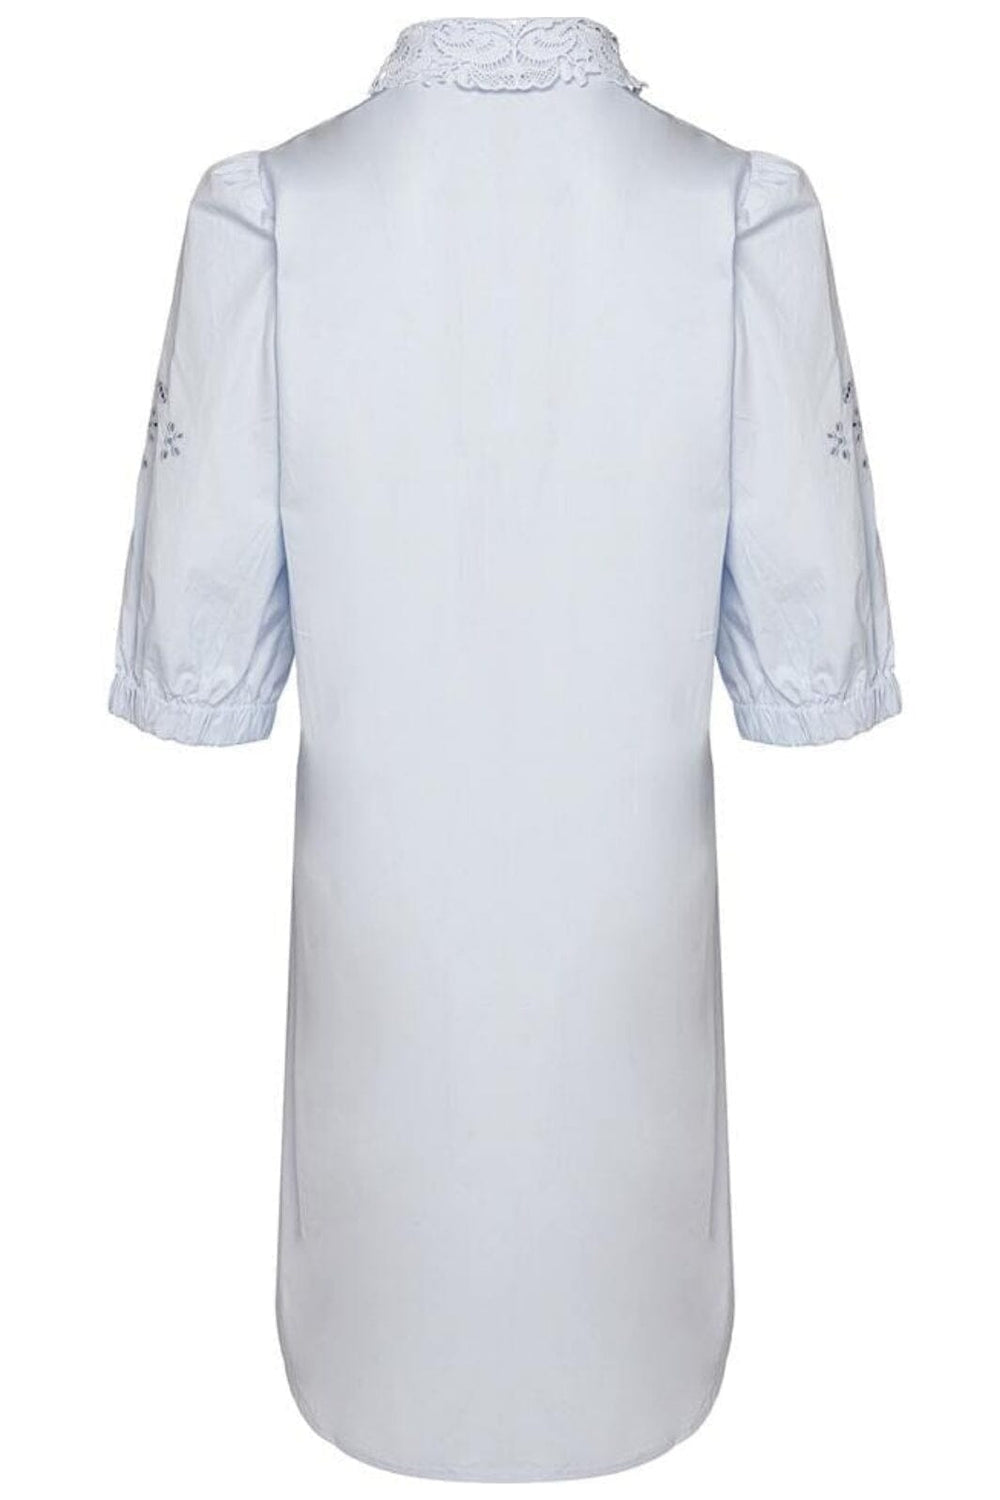 Noella - Lucille Dress Cotton - dress Lightblue Kjoler 